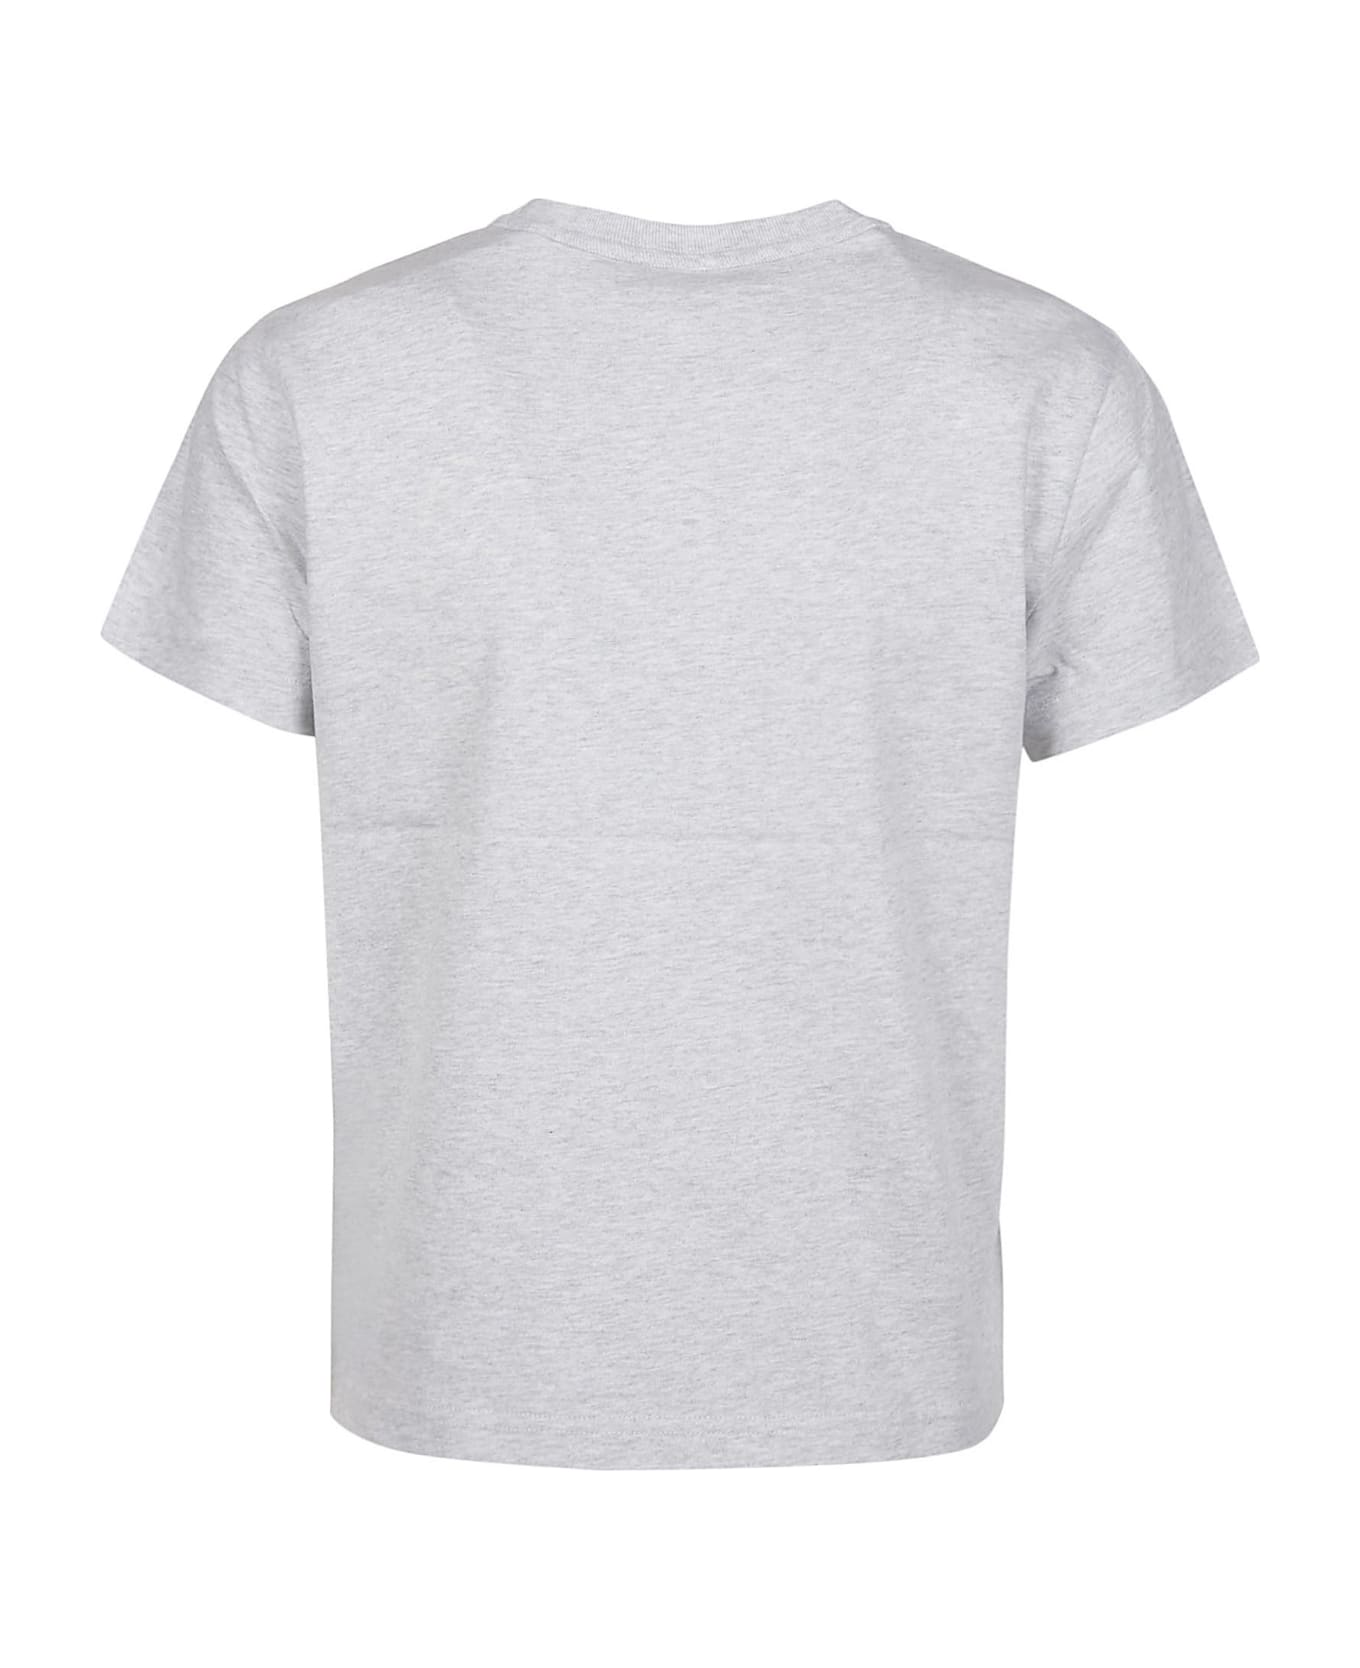 T by Alexander Wang Puff Logo Bound Neck Essential Shrunk T-shirt - Light Heather Grey